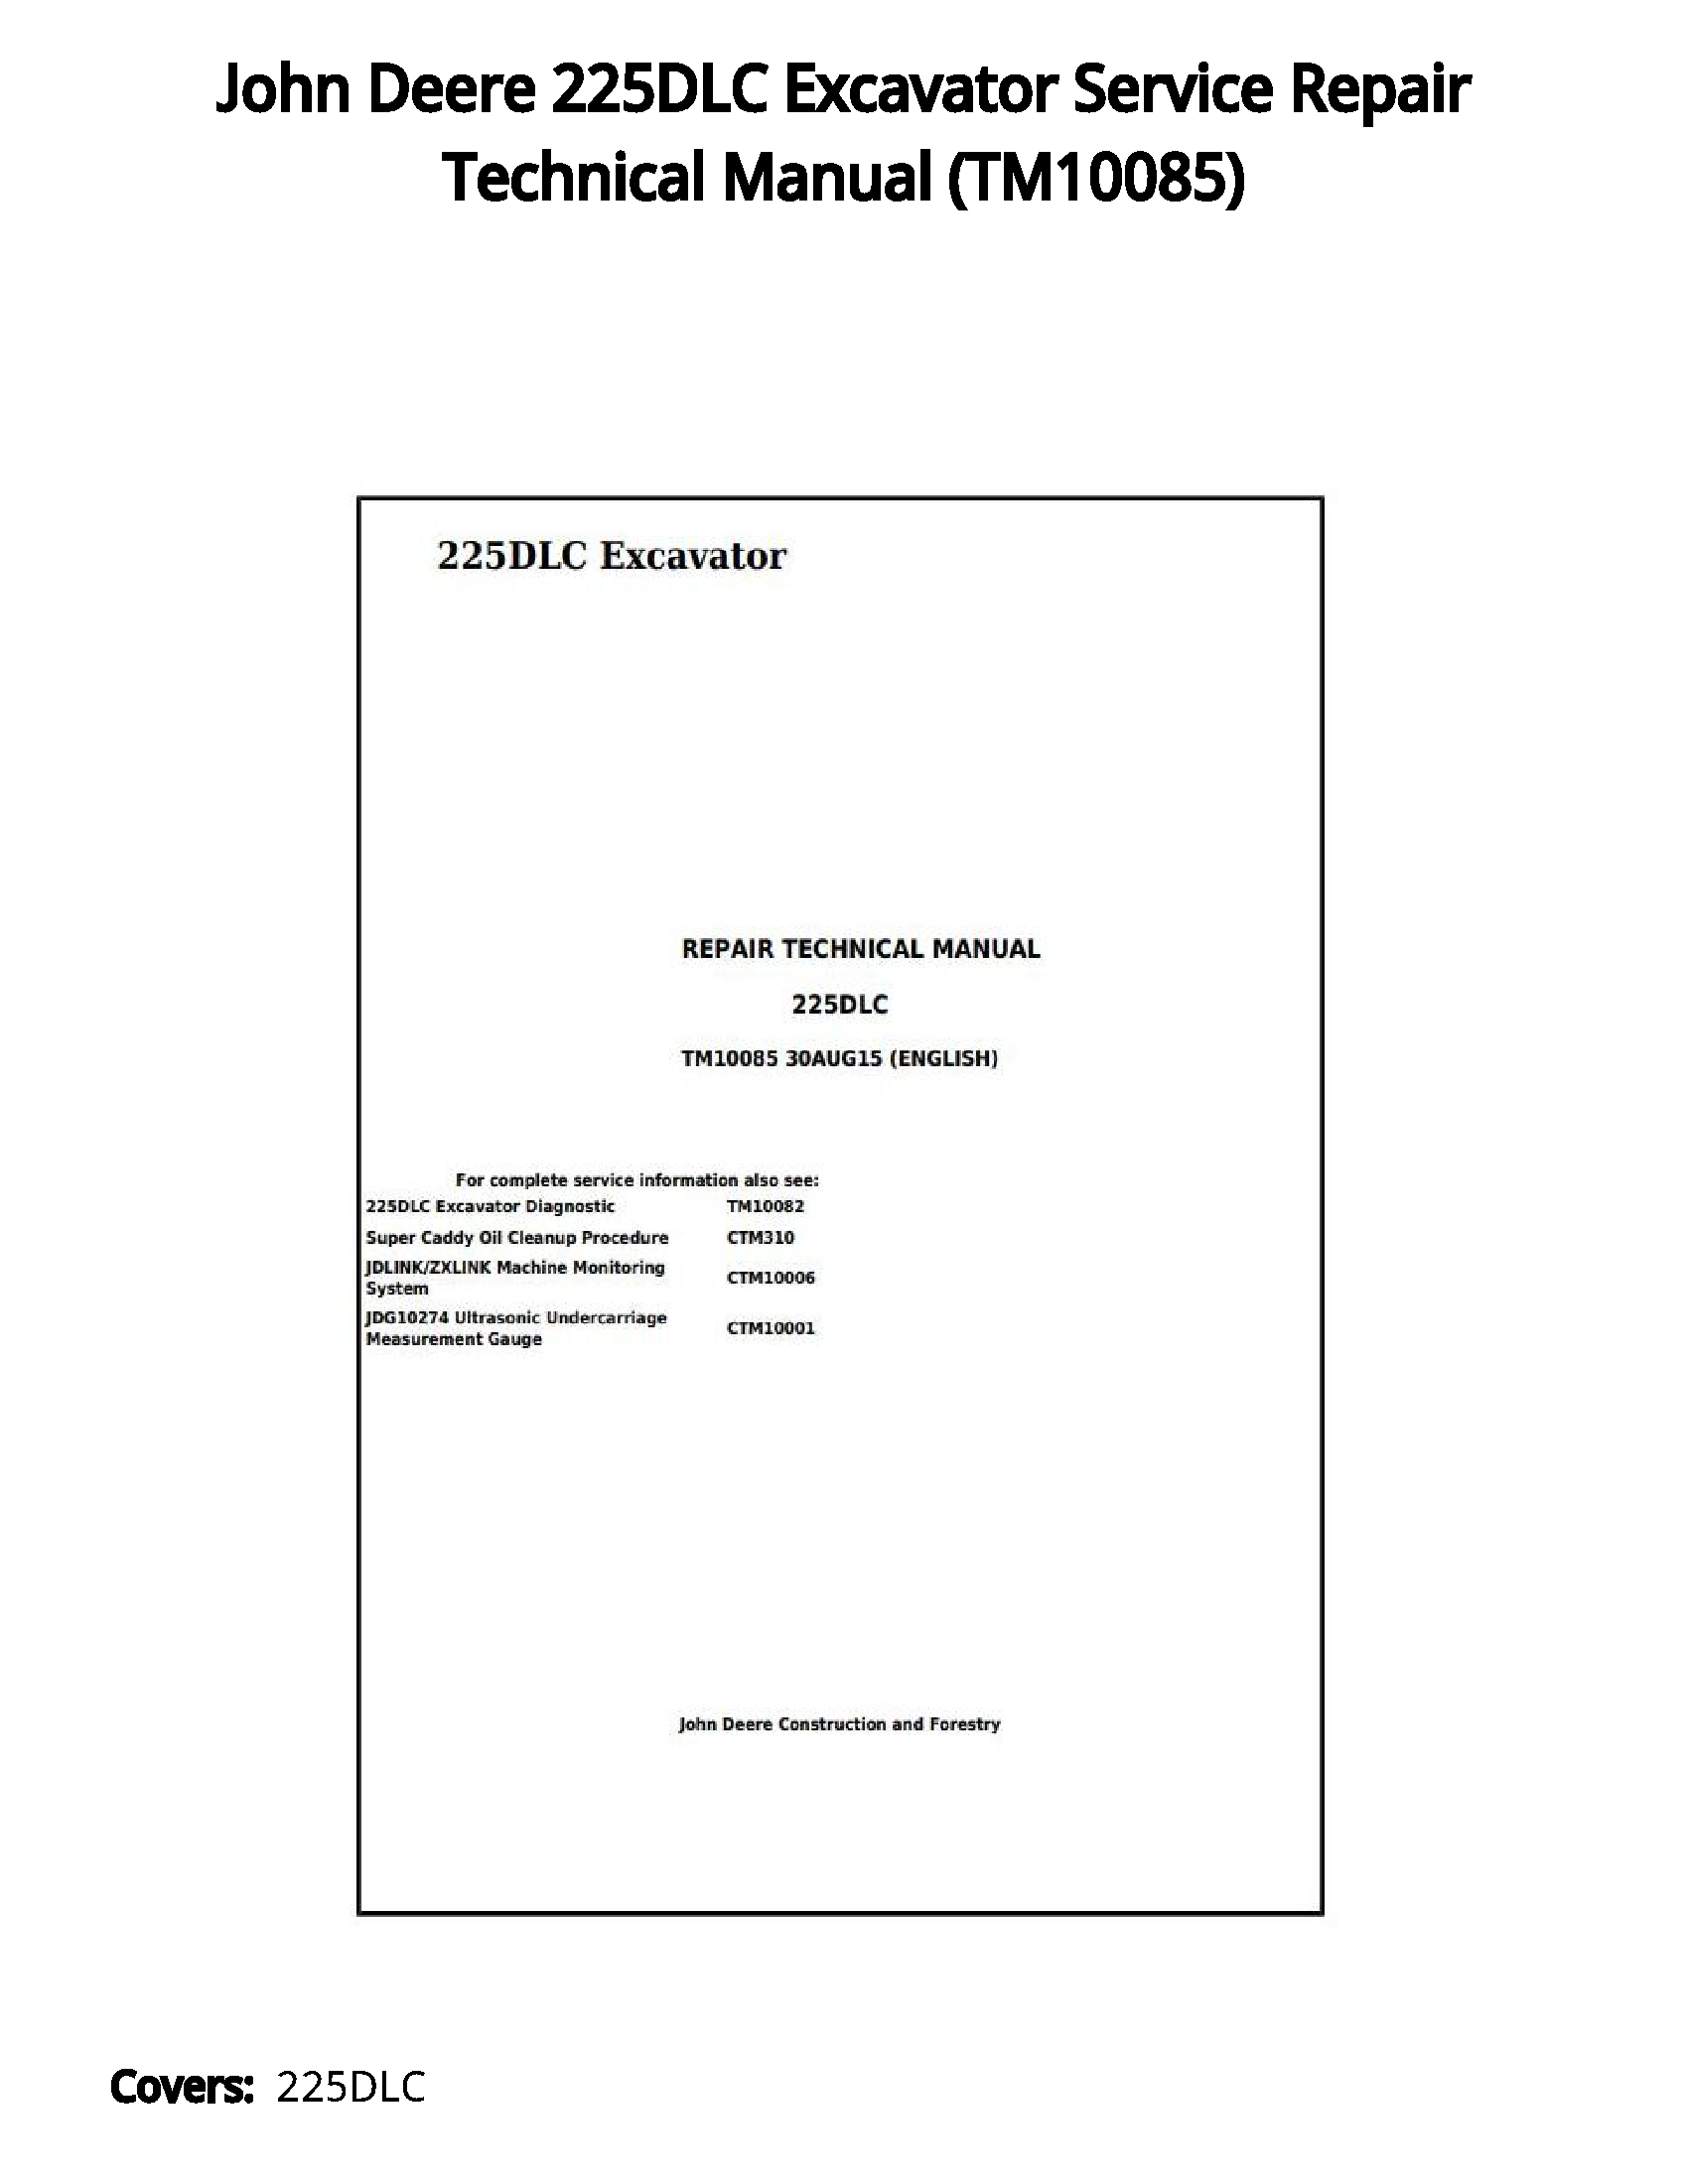 John Deere 225DLC Excavator Service Repair Technical Manual - TM10085